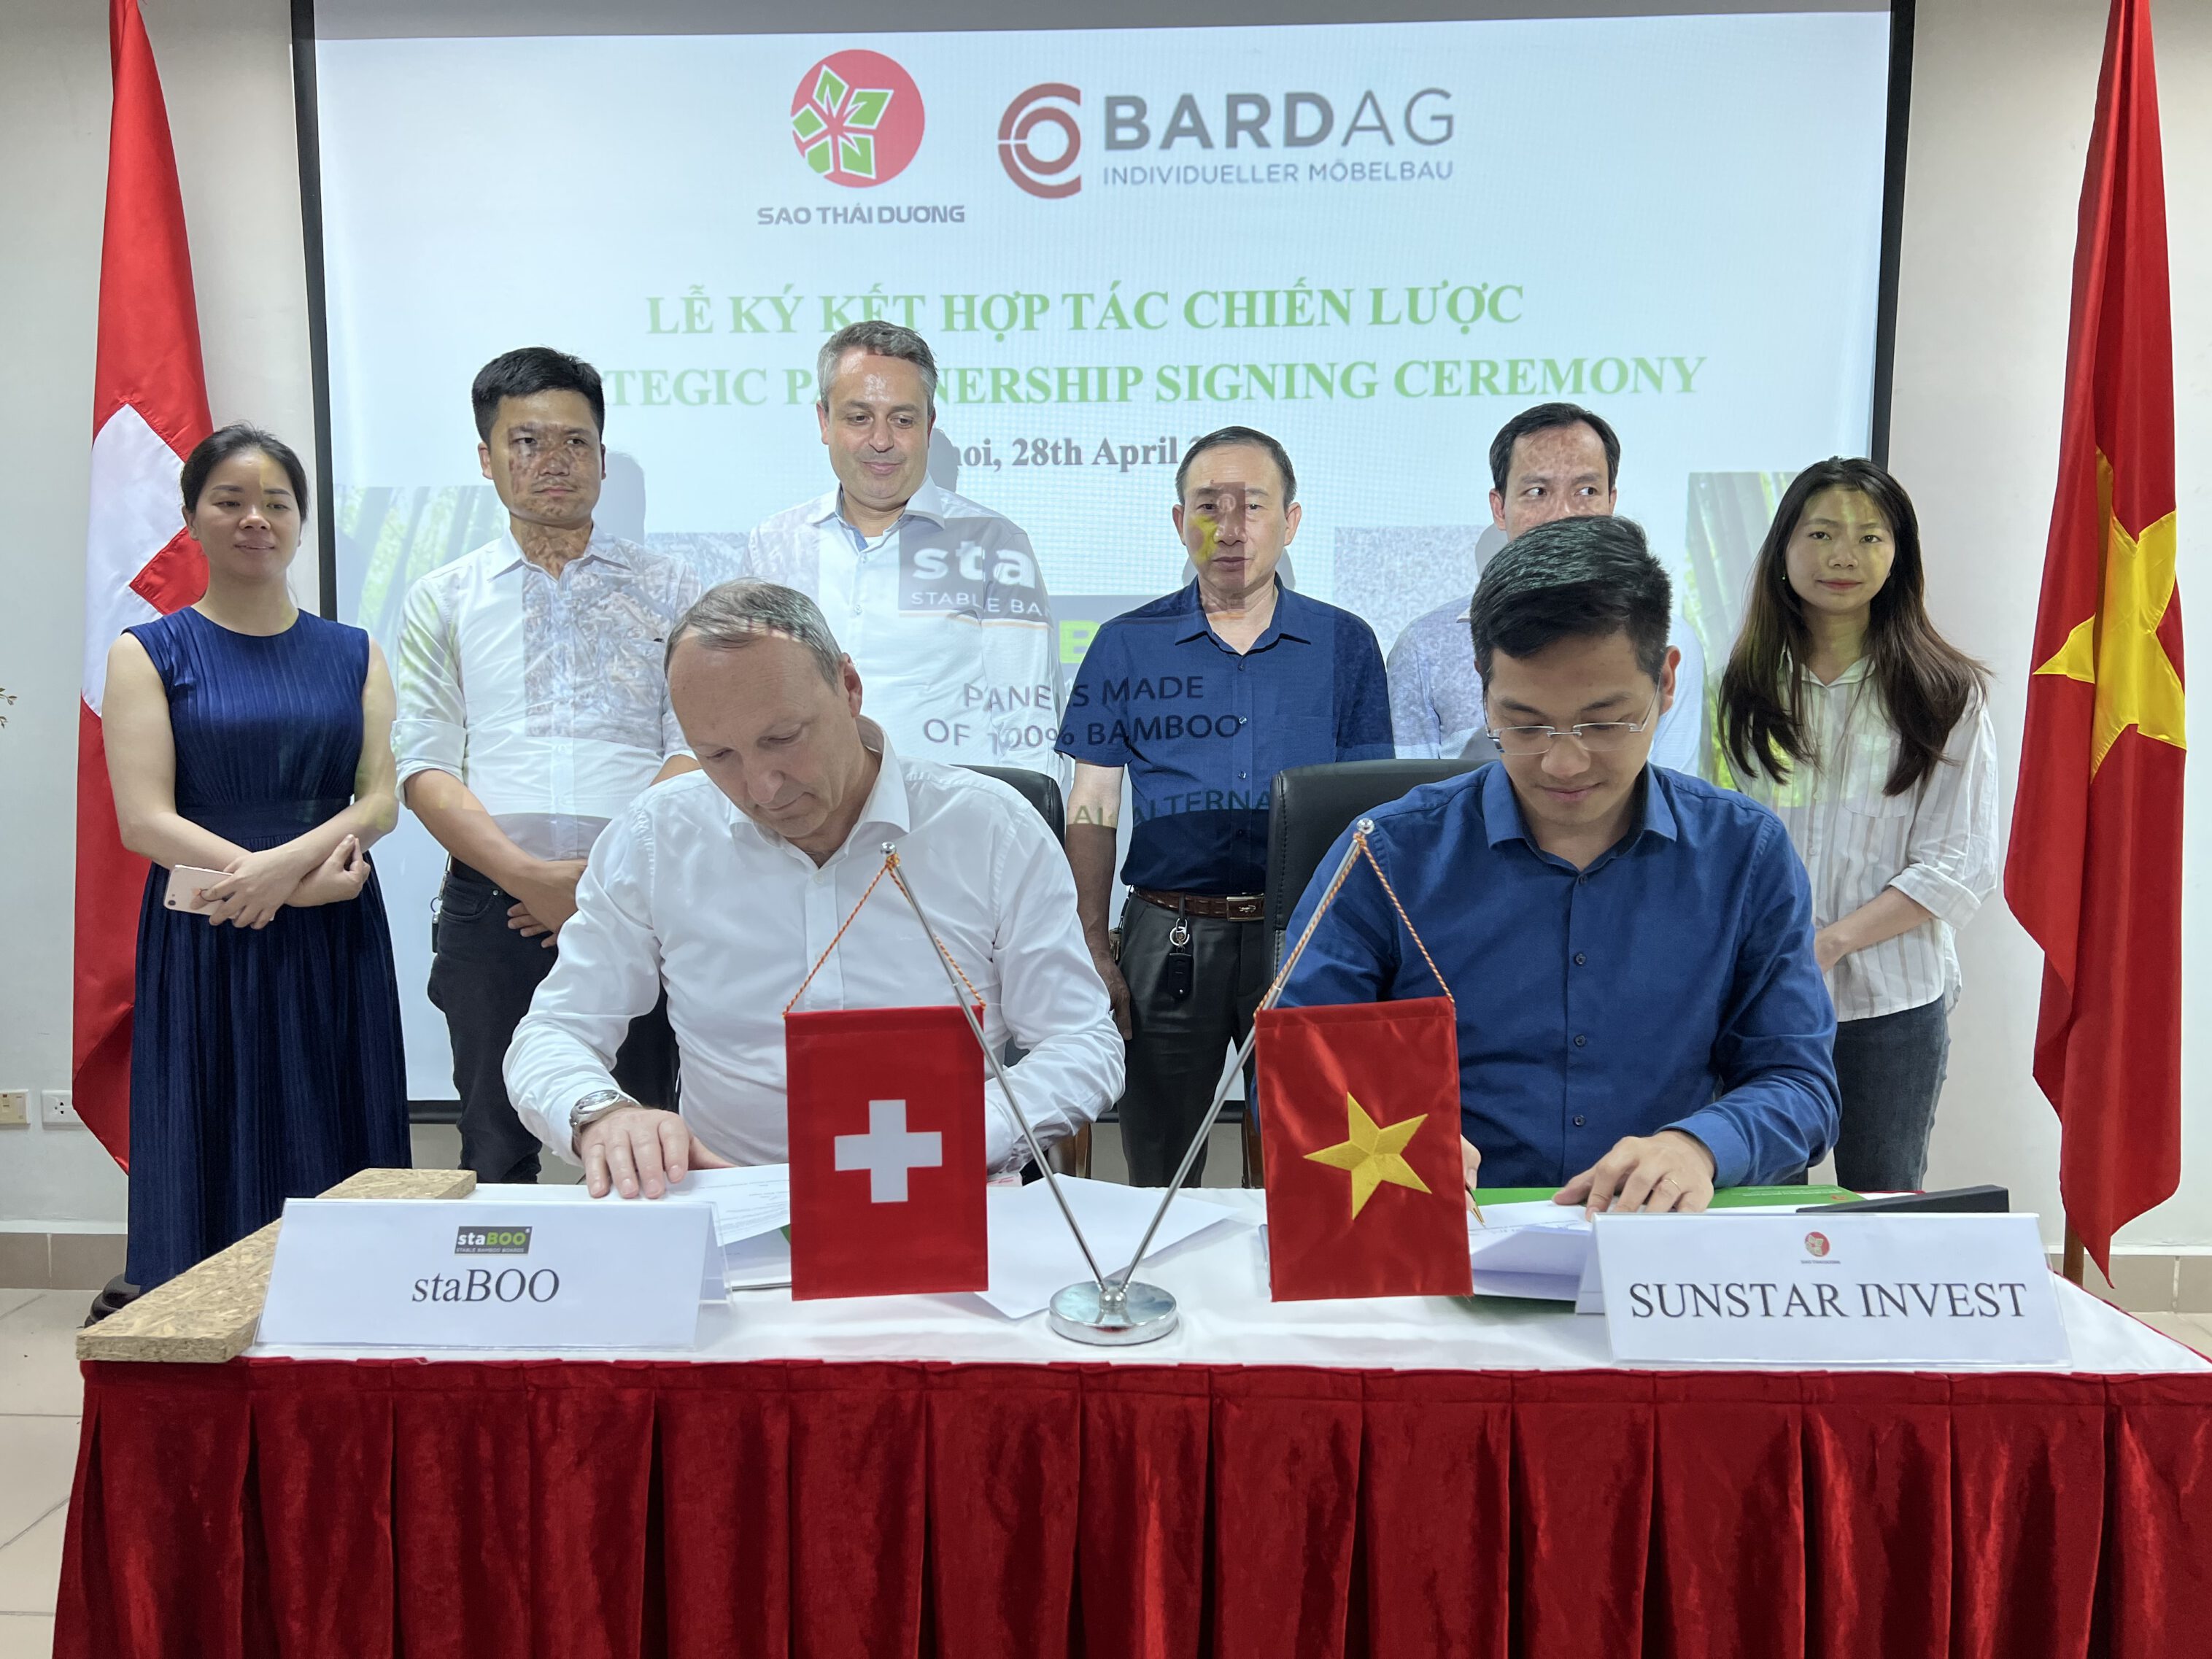 SJF ký kết hợp tác chiến lược với BARD AG – staBOO Thuỵ Sỹ để xây Nhà máy sản xuất ván dăm tre OSB lớn nhất thế giới.